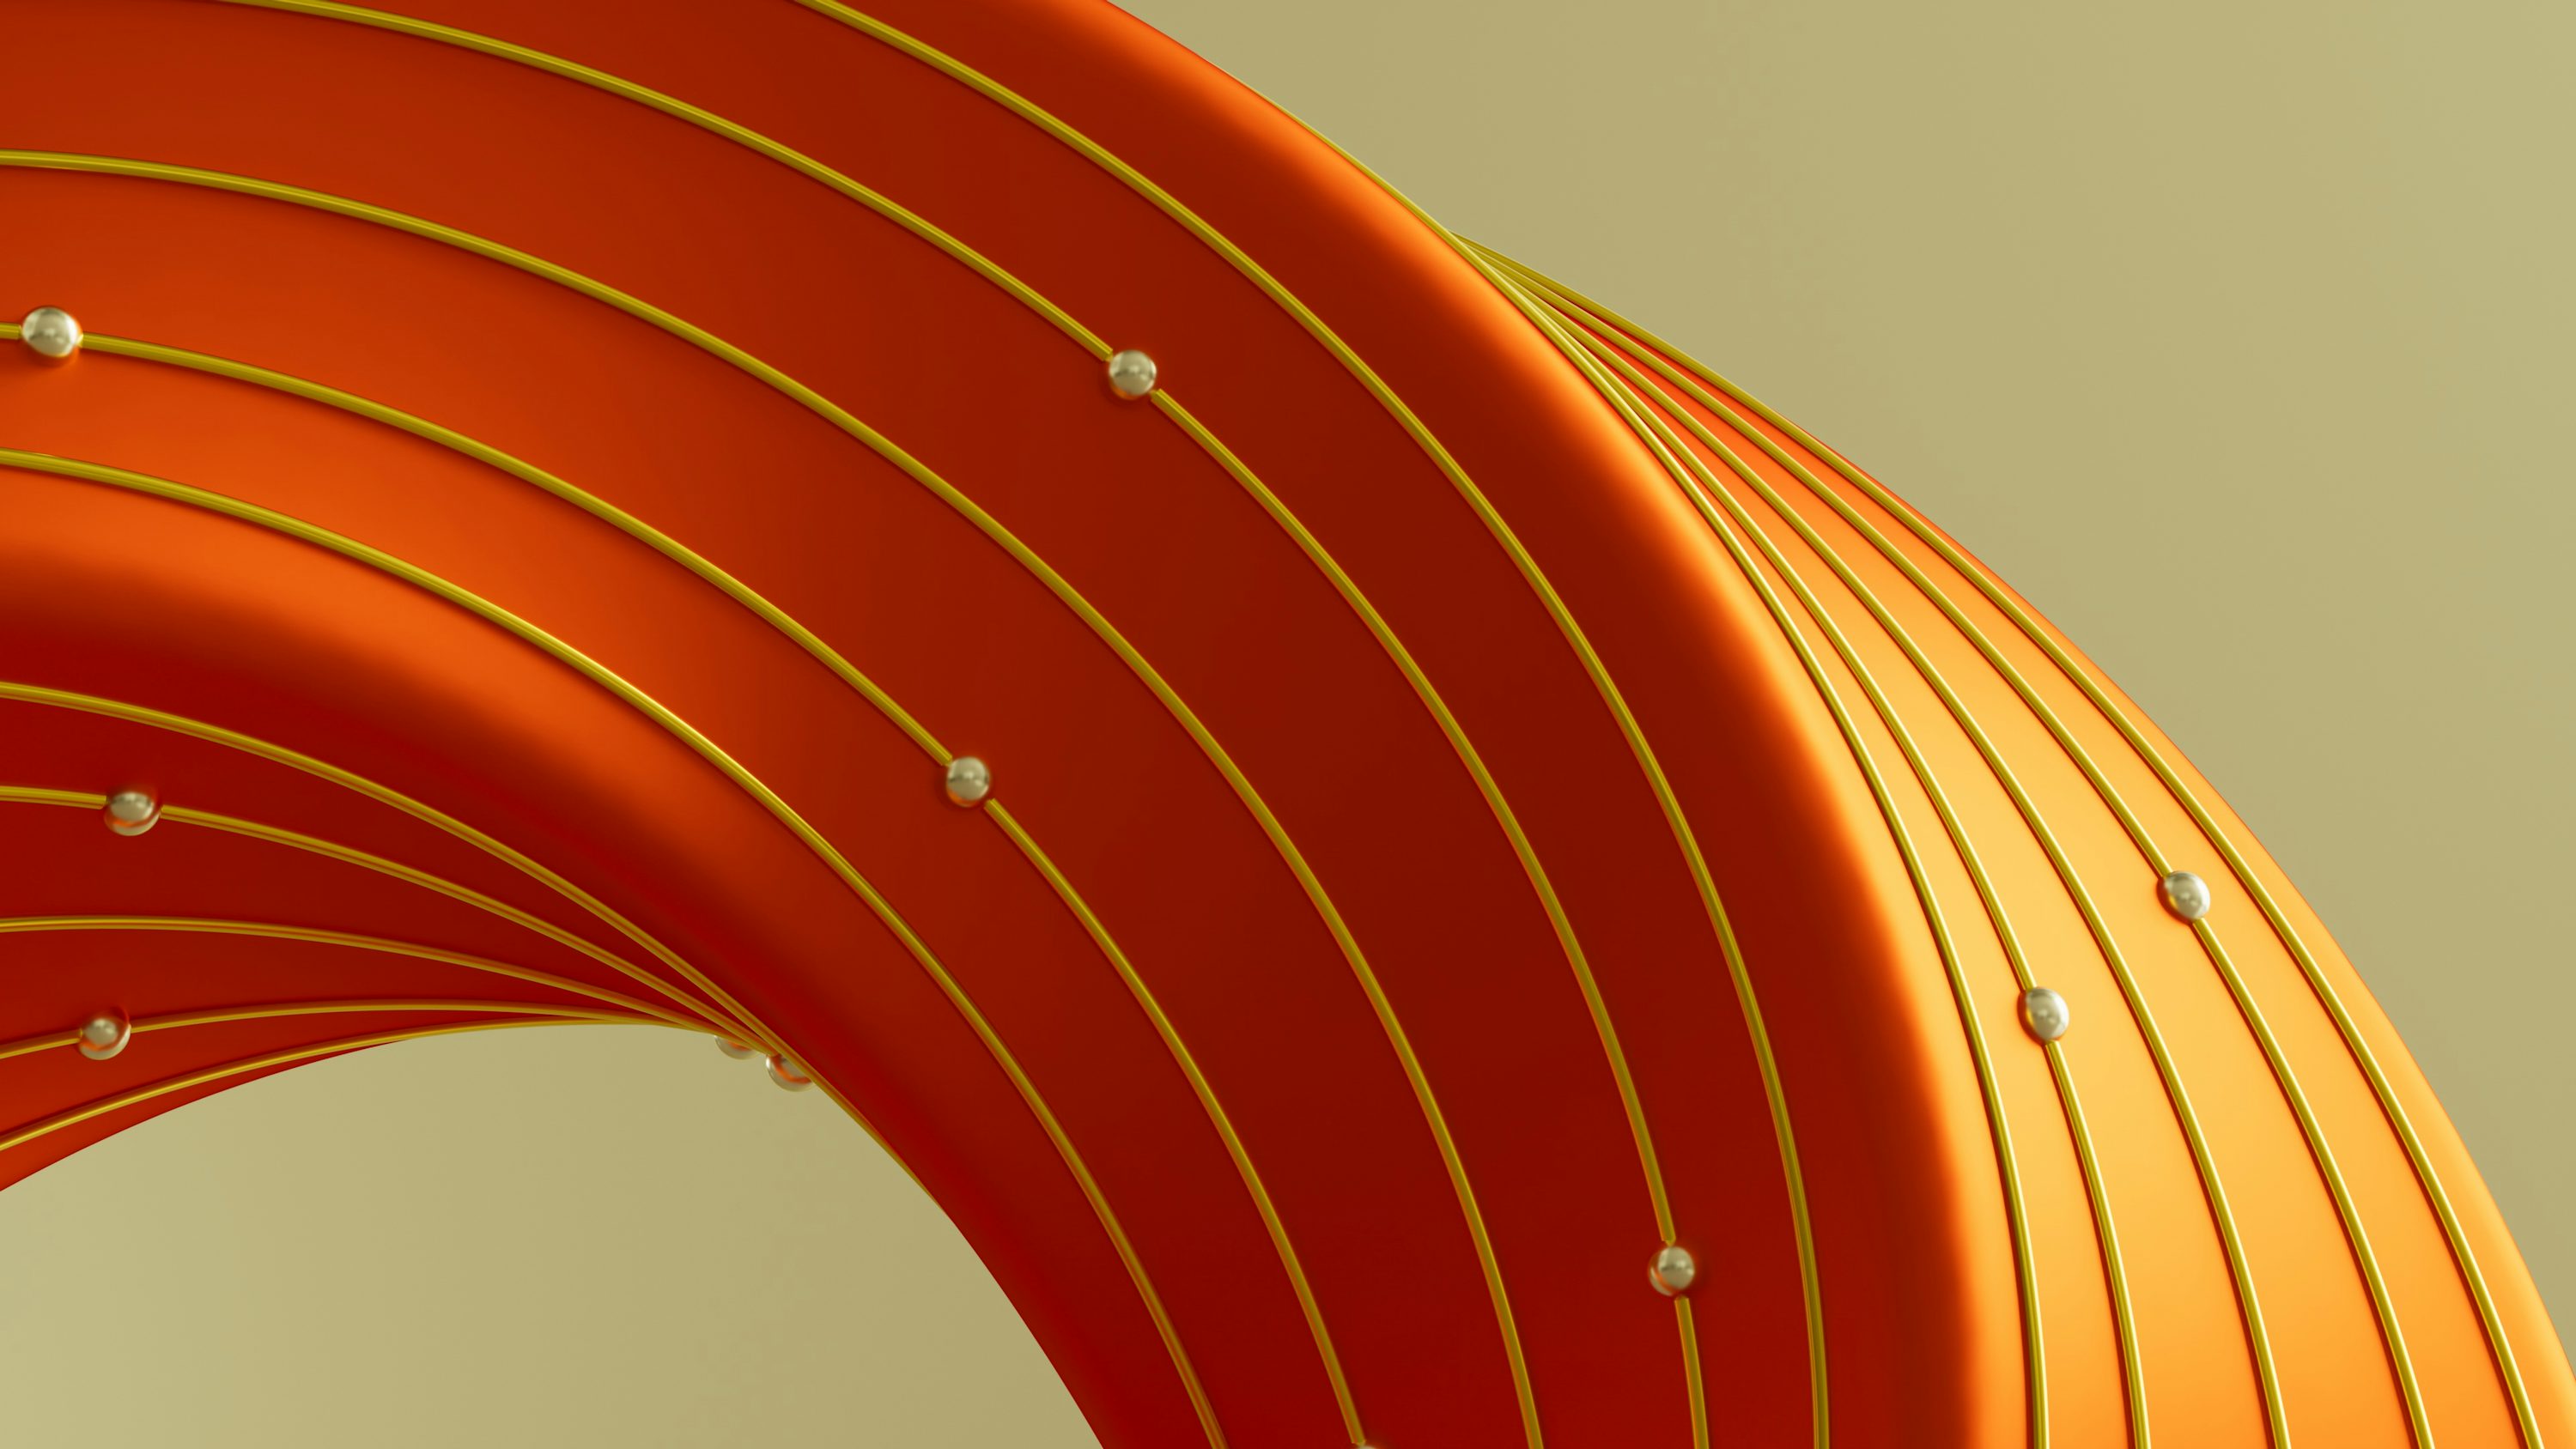 Immagine astratta di un oggetto arancione curvo